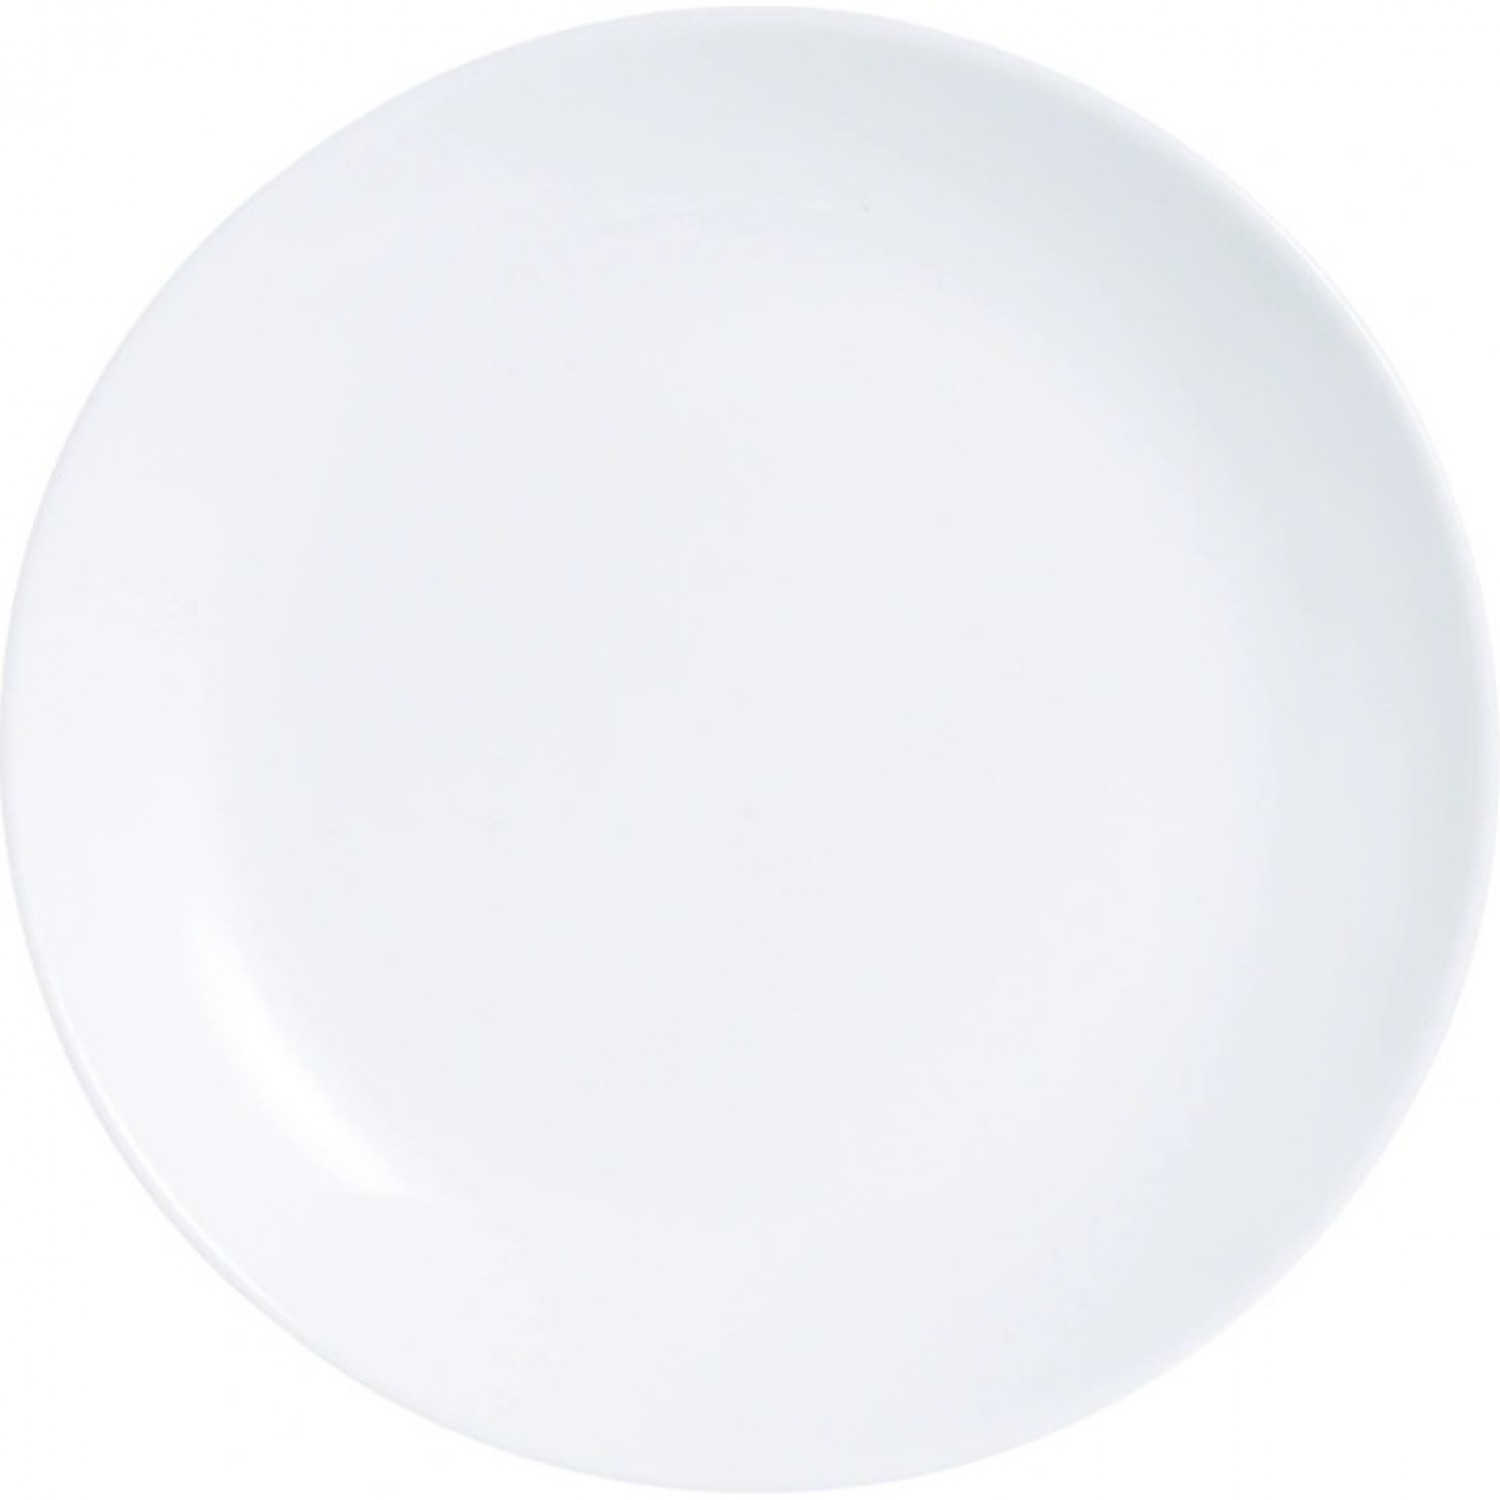 Тарелка обеденная ДИВАЛИ 25см LUMINARC D6905 (P3299) тарелка обеденная дивали марбл 25см стекло